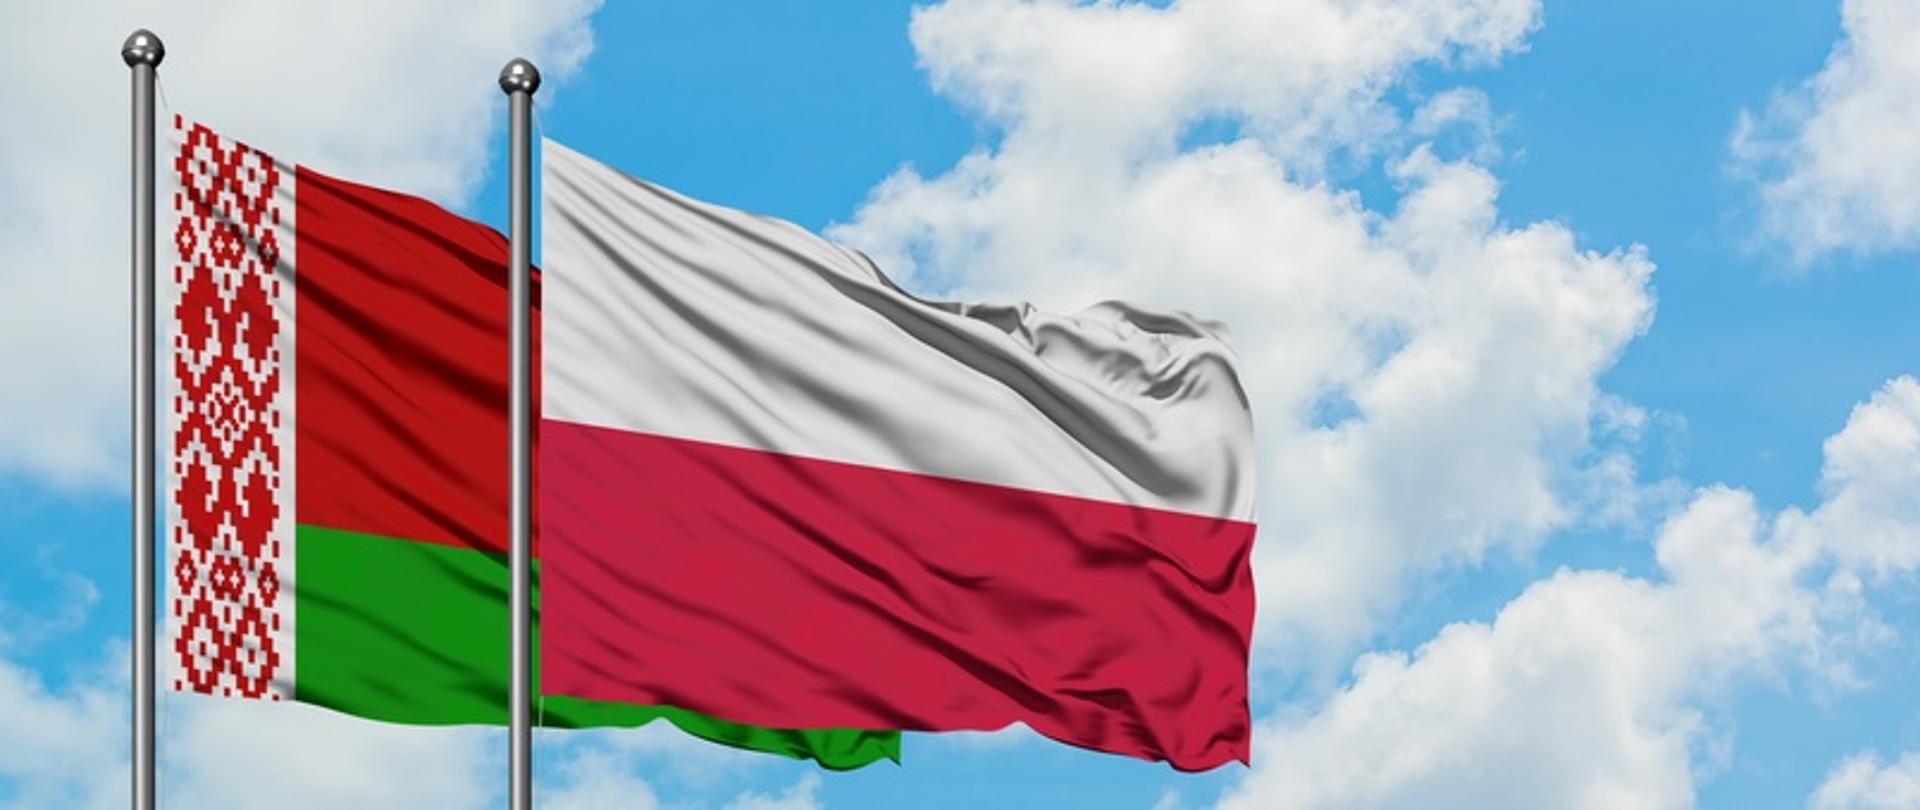 Flaga Polski i Białorusi powiewa na tle błękitnego nieba.